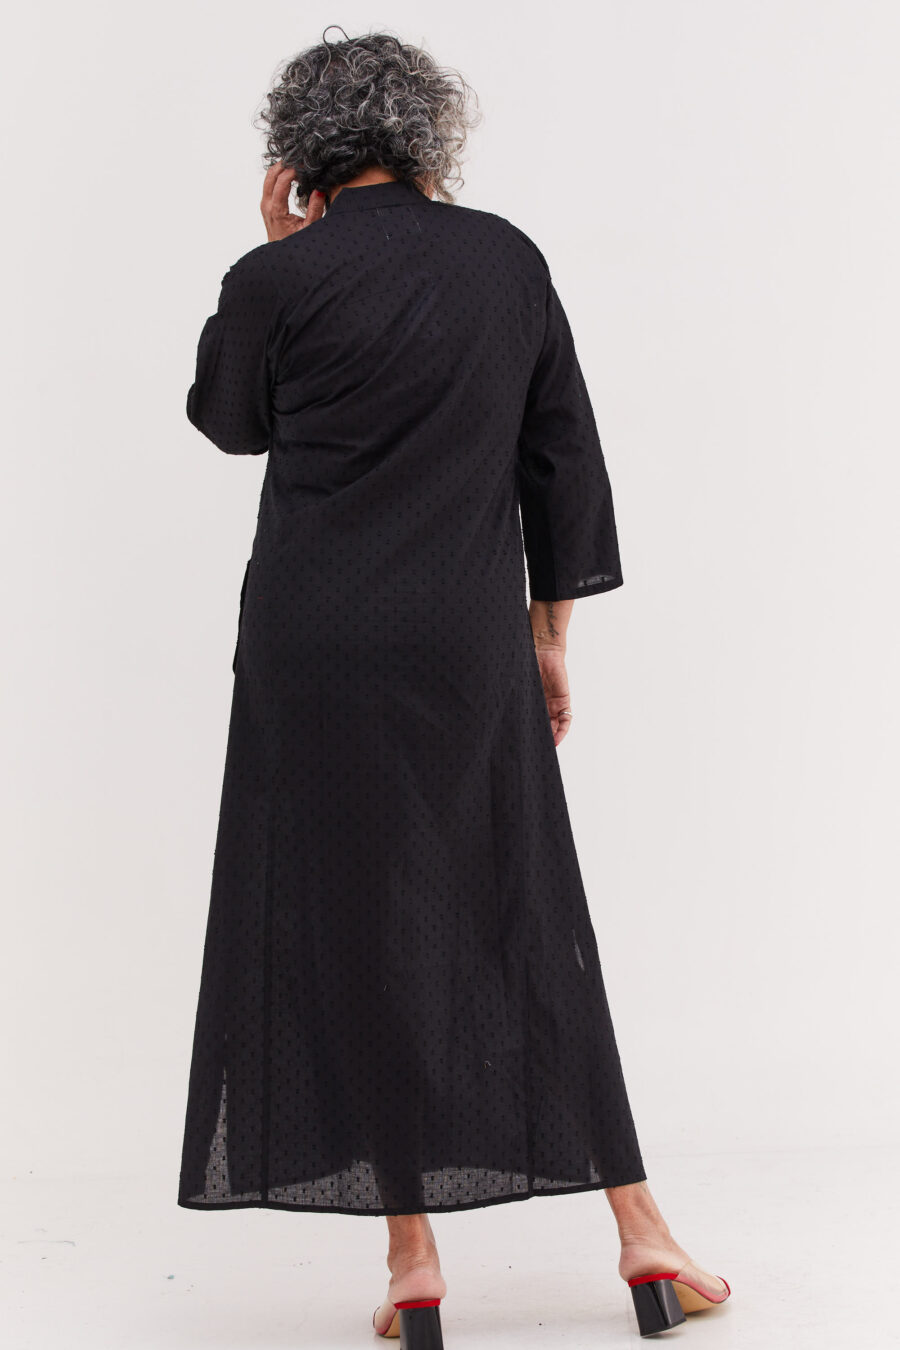 גלביה לנשים | גלבייה בעיצוב ייחודי - שמלה שחורה עם עיגולים עדינים בבד שיוצרים טקסטורה מיוחדת